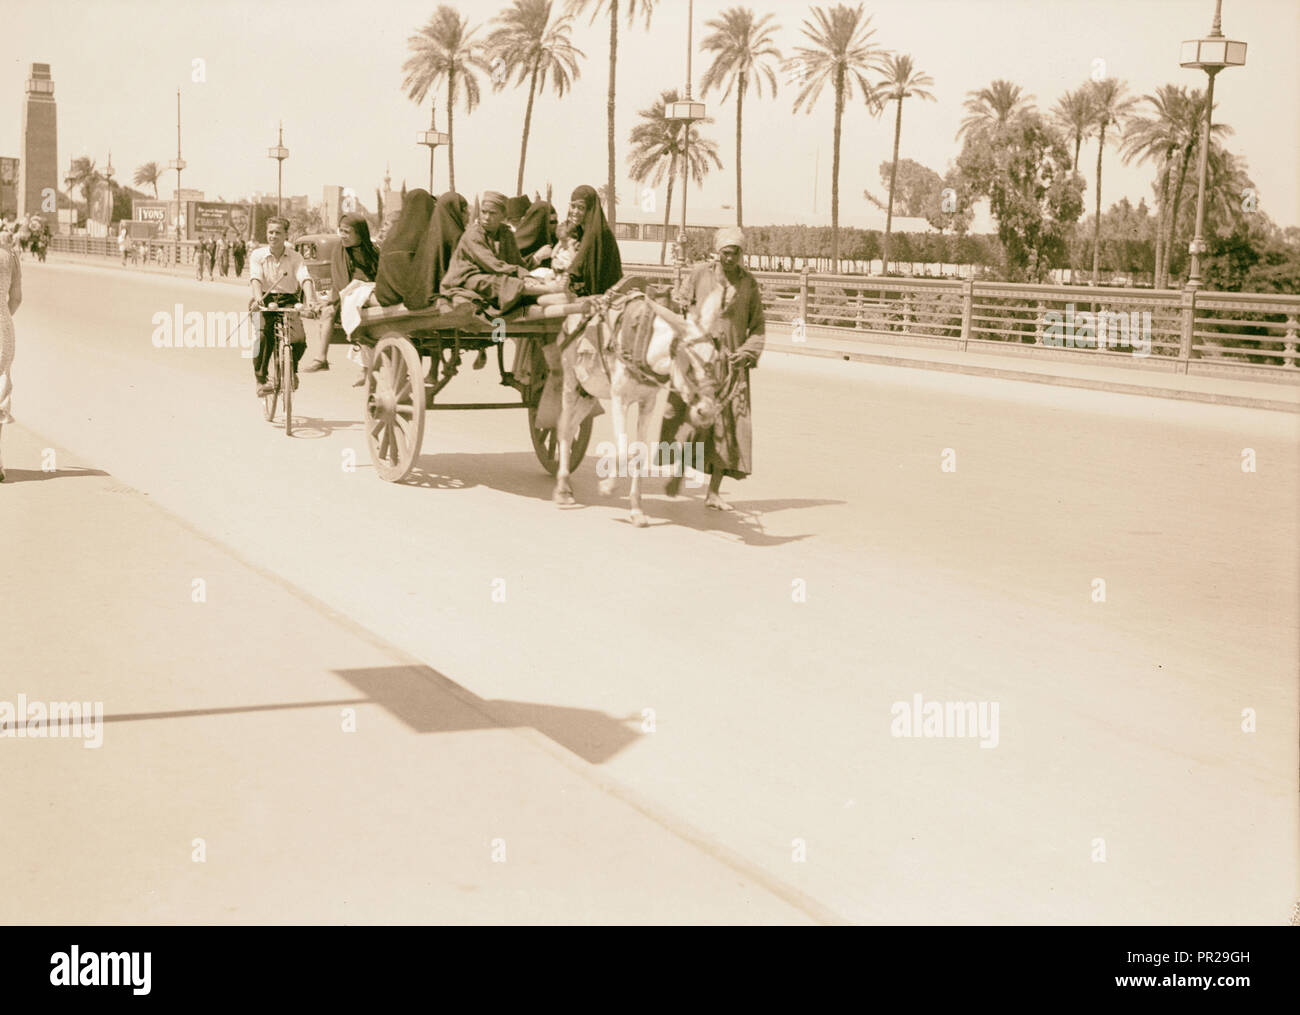 L'Égypte. Le Caire. Types et caractères. Panier natif de transporter des passagers. 1934, l'Égypte, Le Caire Banque D'Images